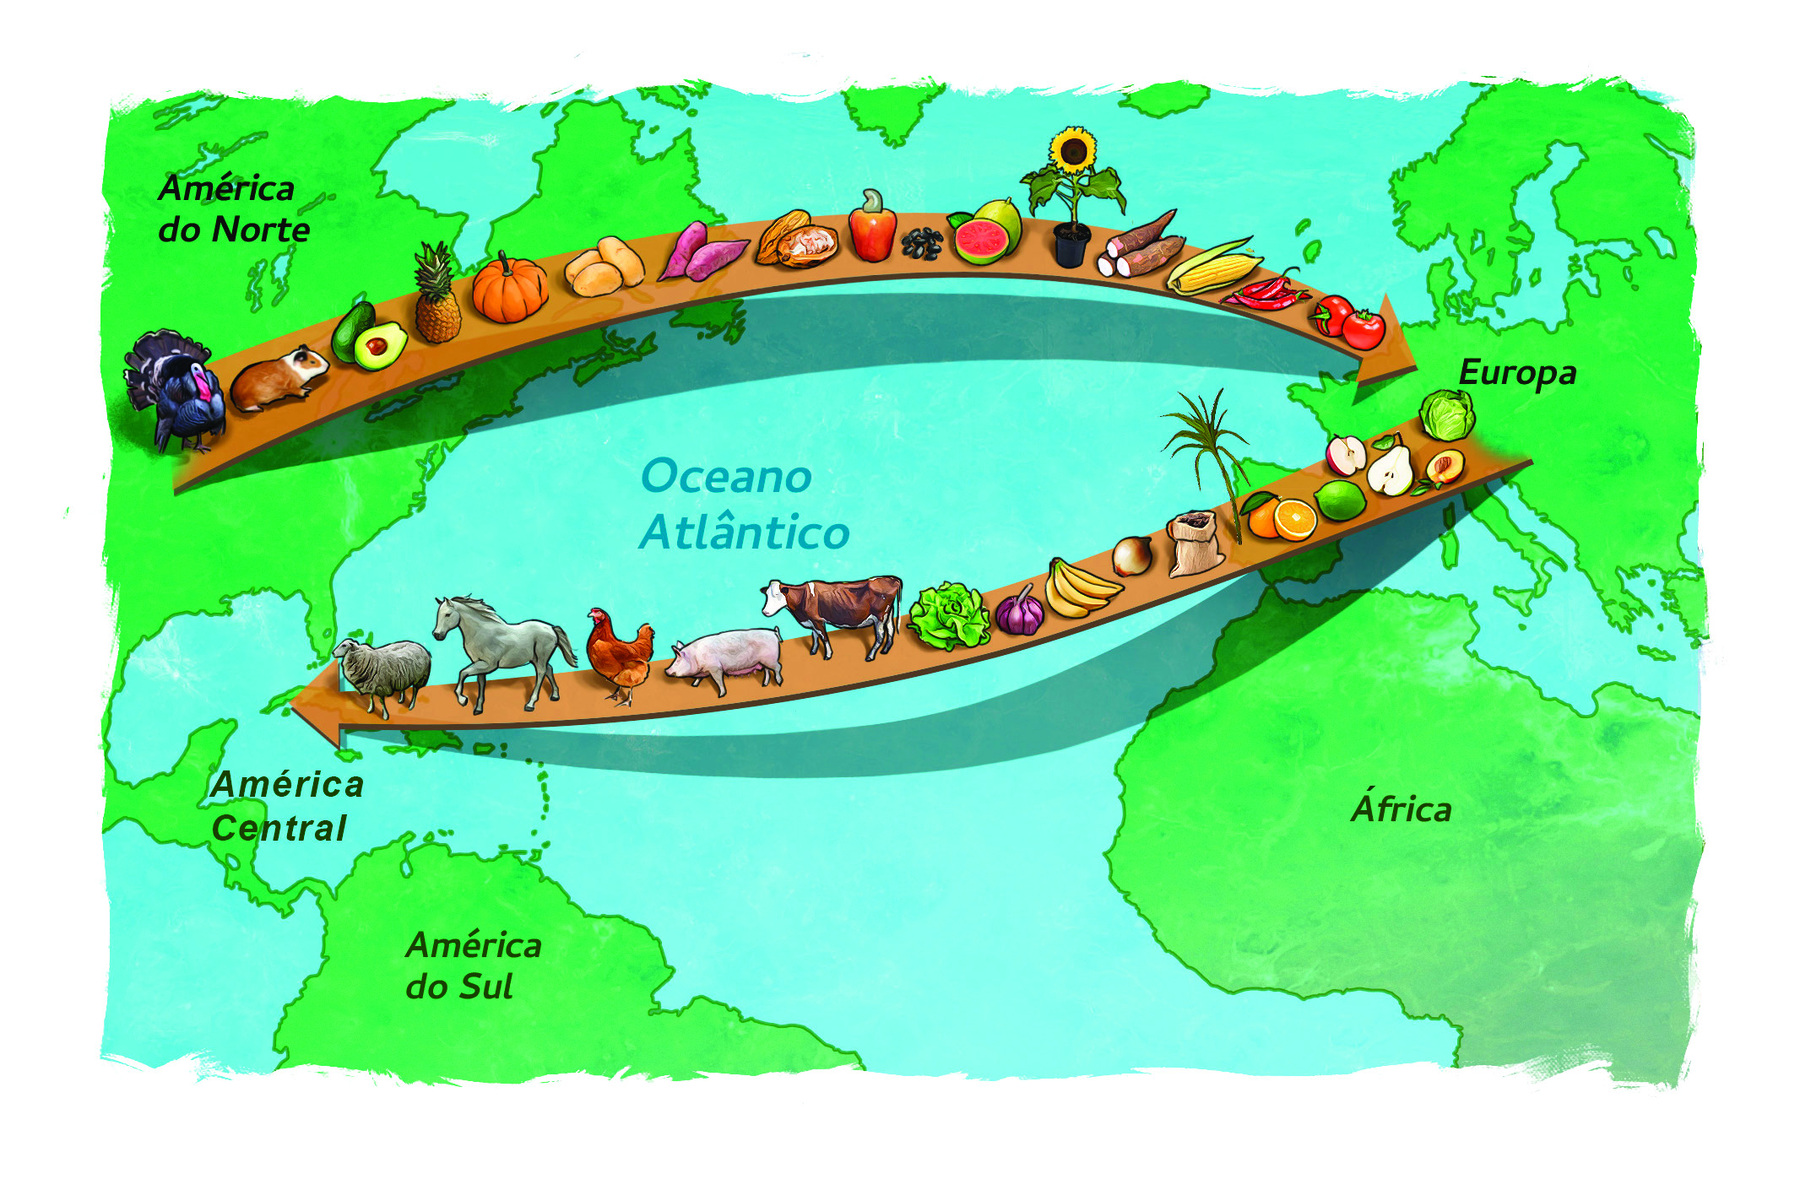 Ilustração. Desenho de um mapa representando parcialmente América, Europa e África. Uma seta parte da Europa em direção à América, contendo as imagens de frutos como maçã, pêra, limão, laranja, banana, legumes e vegetais como cebola, alho, alface, e animais, como vaca, porco, galinha, cavalo e ovelha. Outra seta parte da América em direção à Europa, contendo as imagens de um peru, porquinho da Índia, frutos e raízes como abacate, abacaxi, abóbora, batata, mandioca, caju, feijão, goiaba, milho, pimenta e tomates.